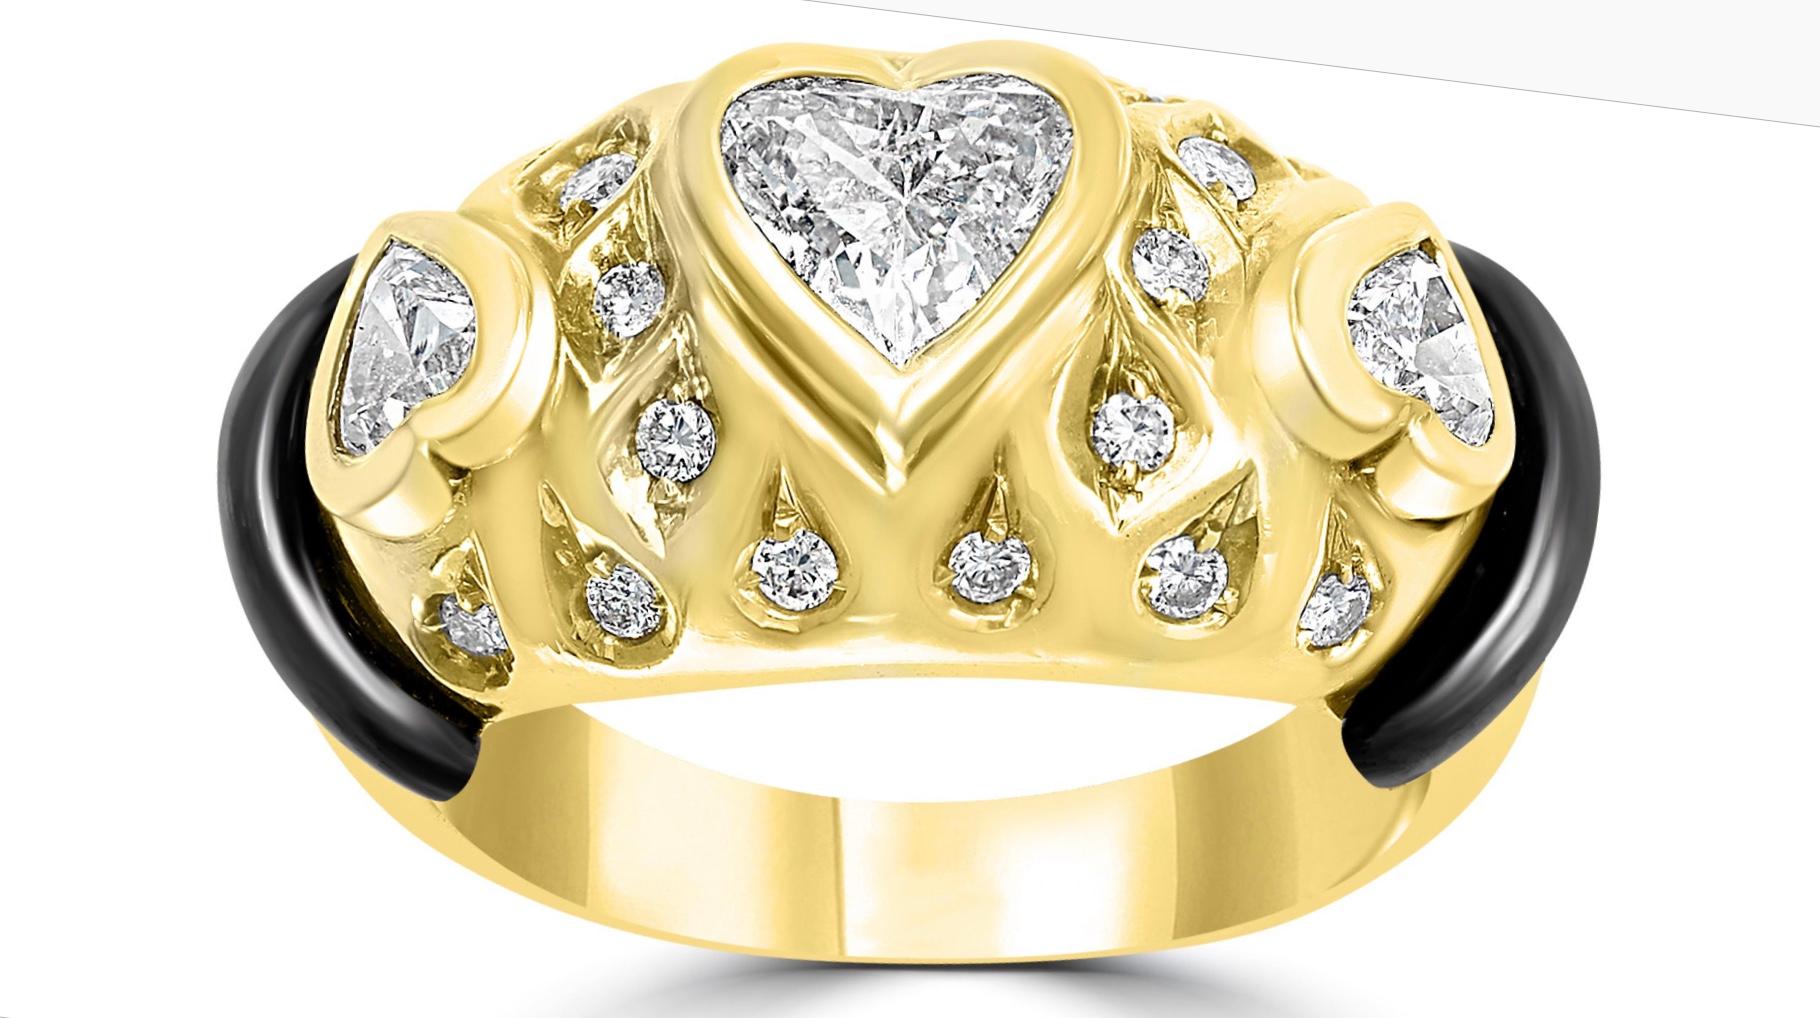 Leporttie Diamond  Bracelet Bague Boucle d'oreille Set de trois pièces en or jaune 18 carats 

Diamants : environ 12 carats
jaune 18K  or  : 125  Grammes
Il présente un style bangle  Bracelet fabriqué en or jaune 18k et incrusté de  7 diamants en